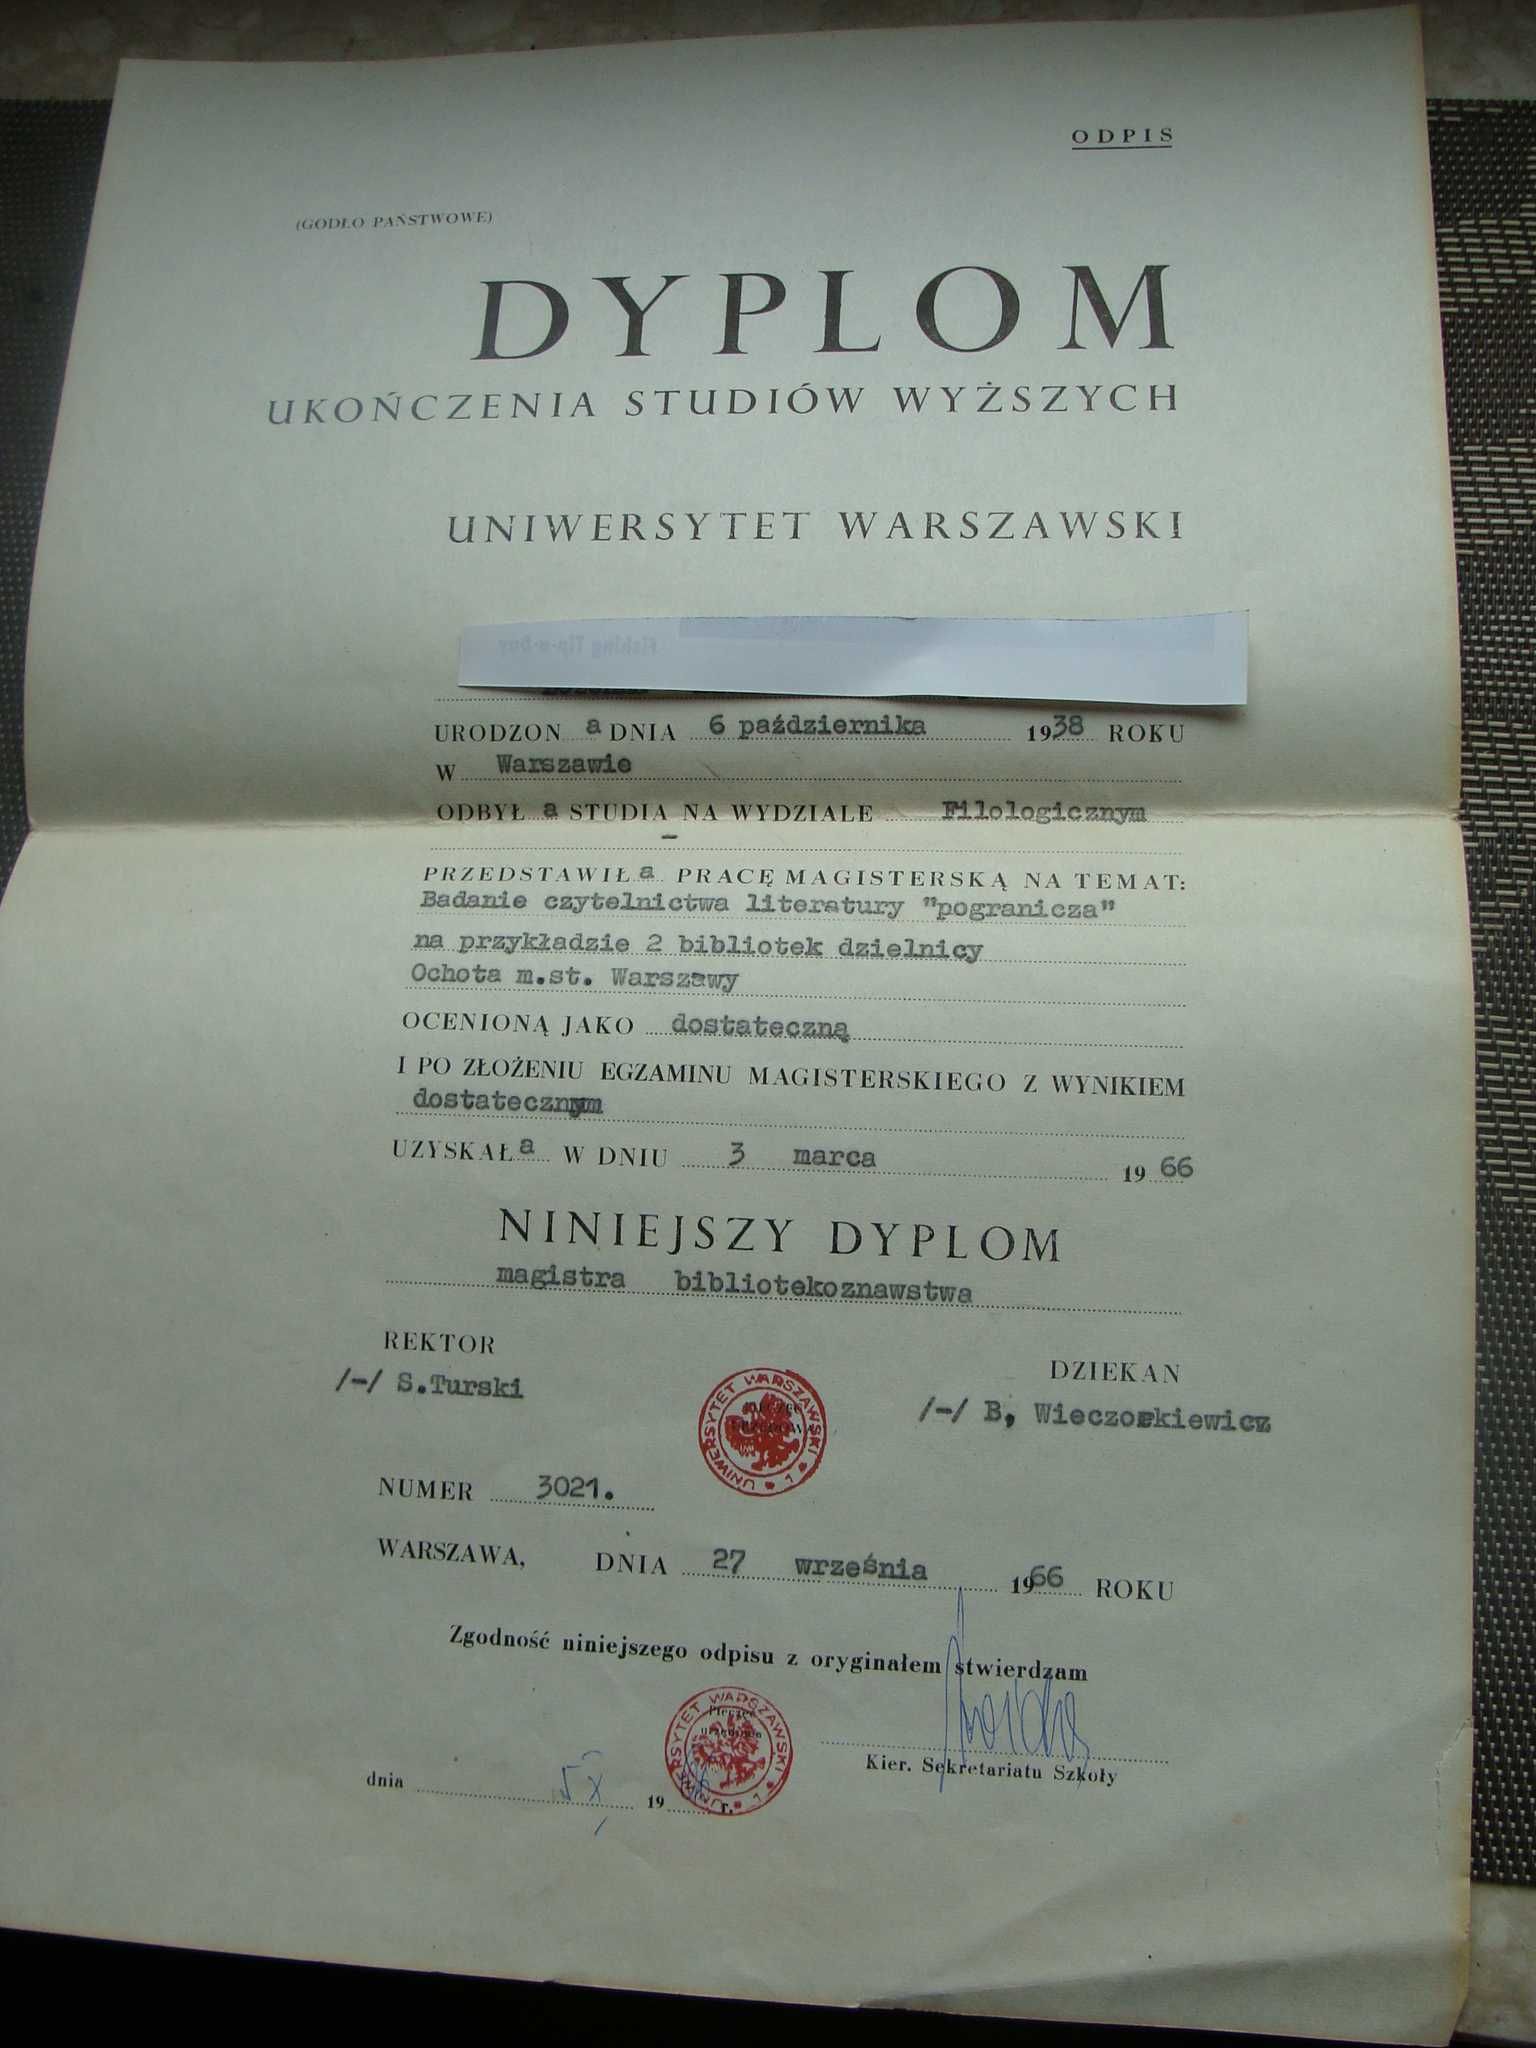 Dyplom UW 1966 r.